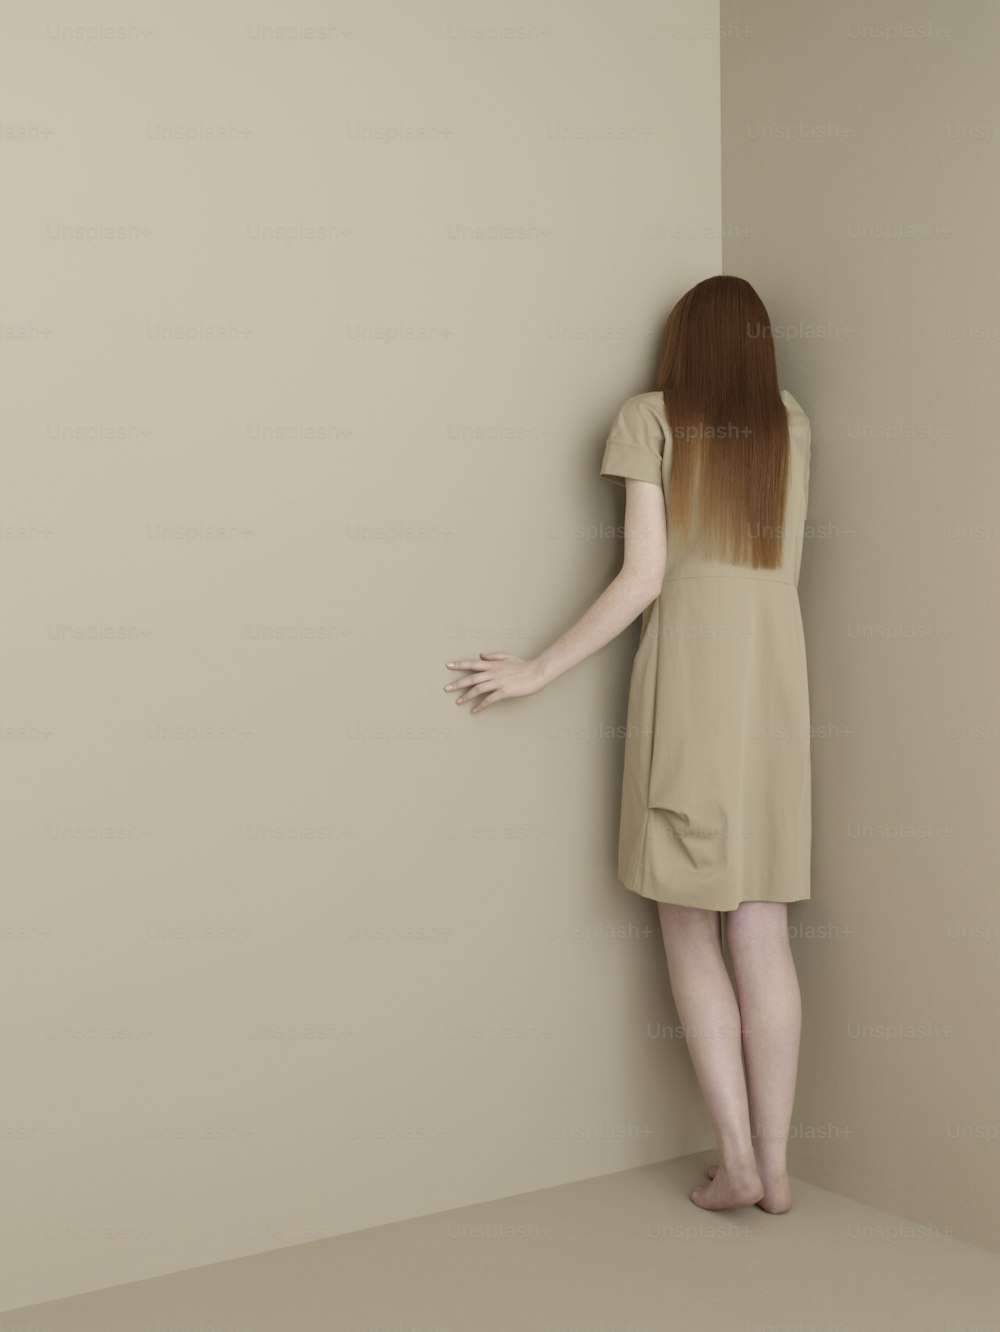 Une femme en robe courte est appuyée contre un mur